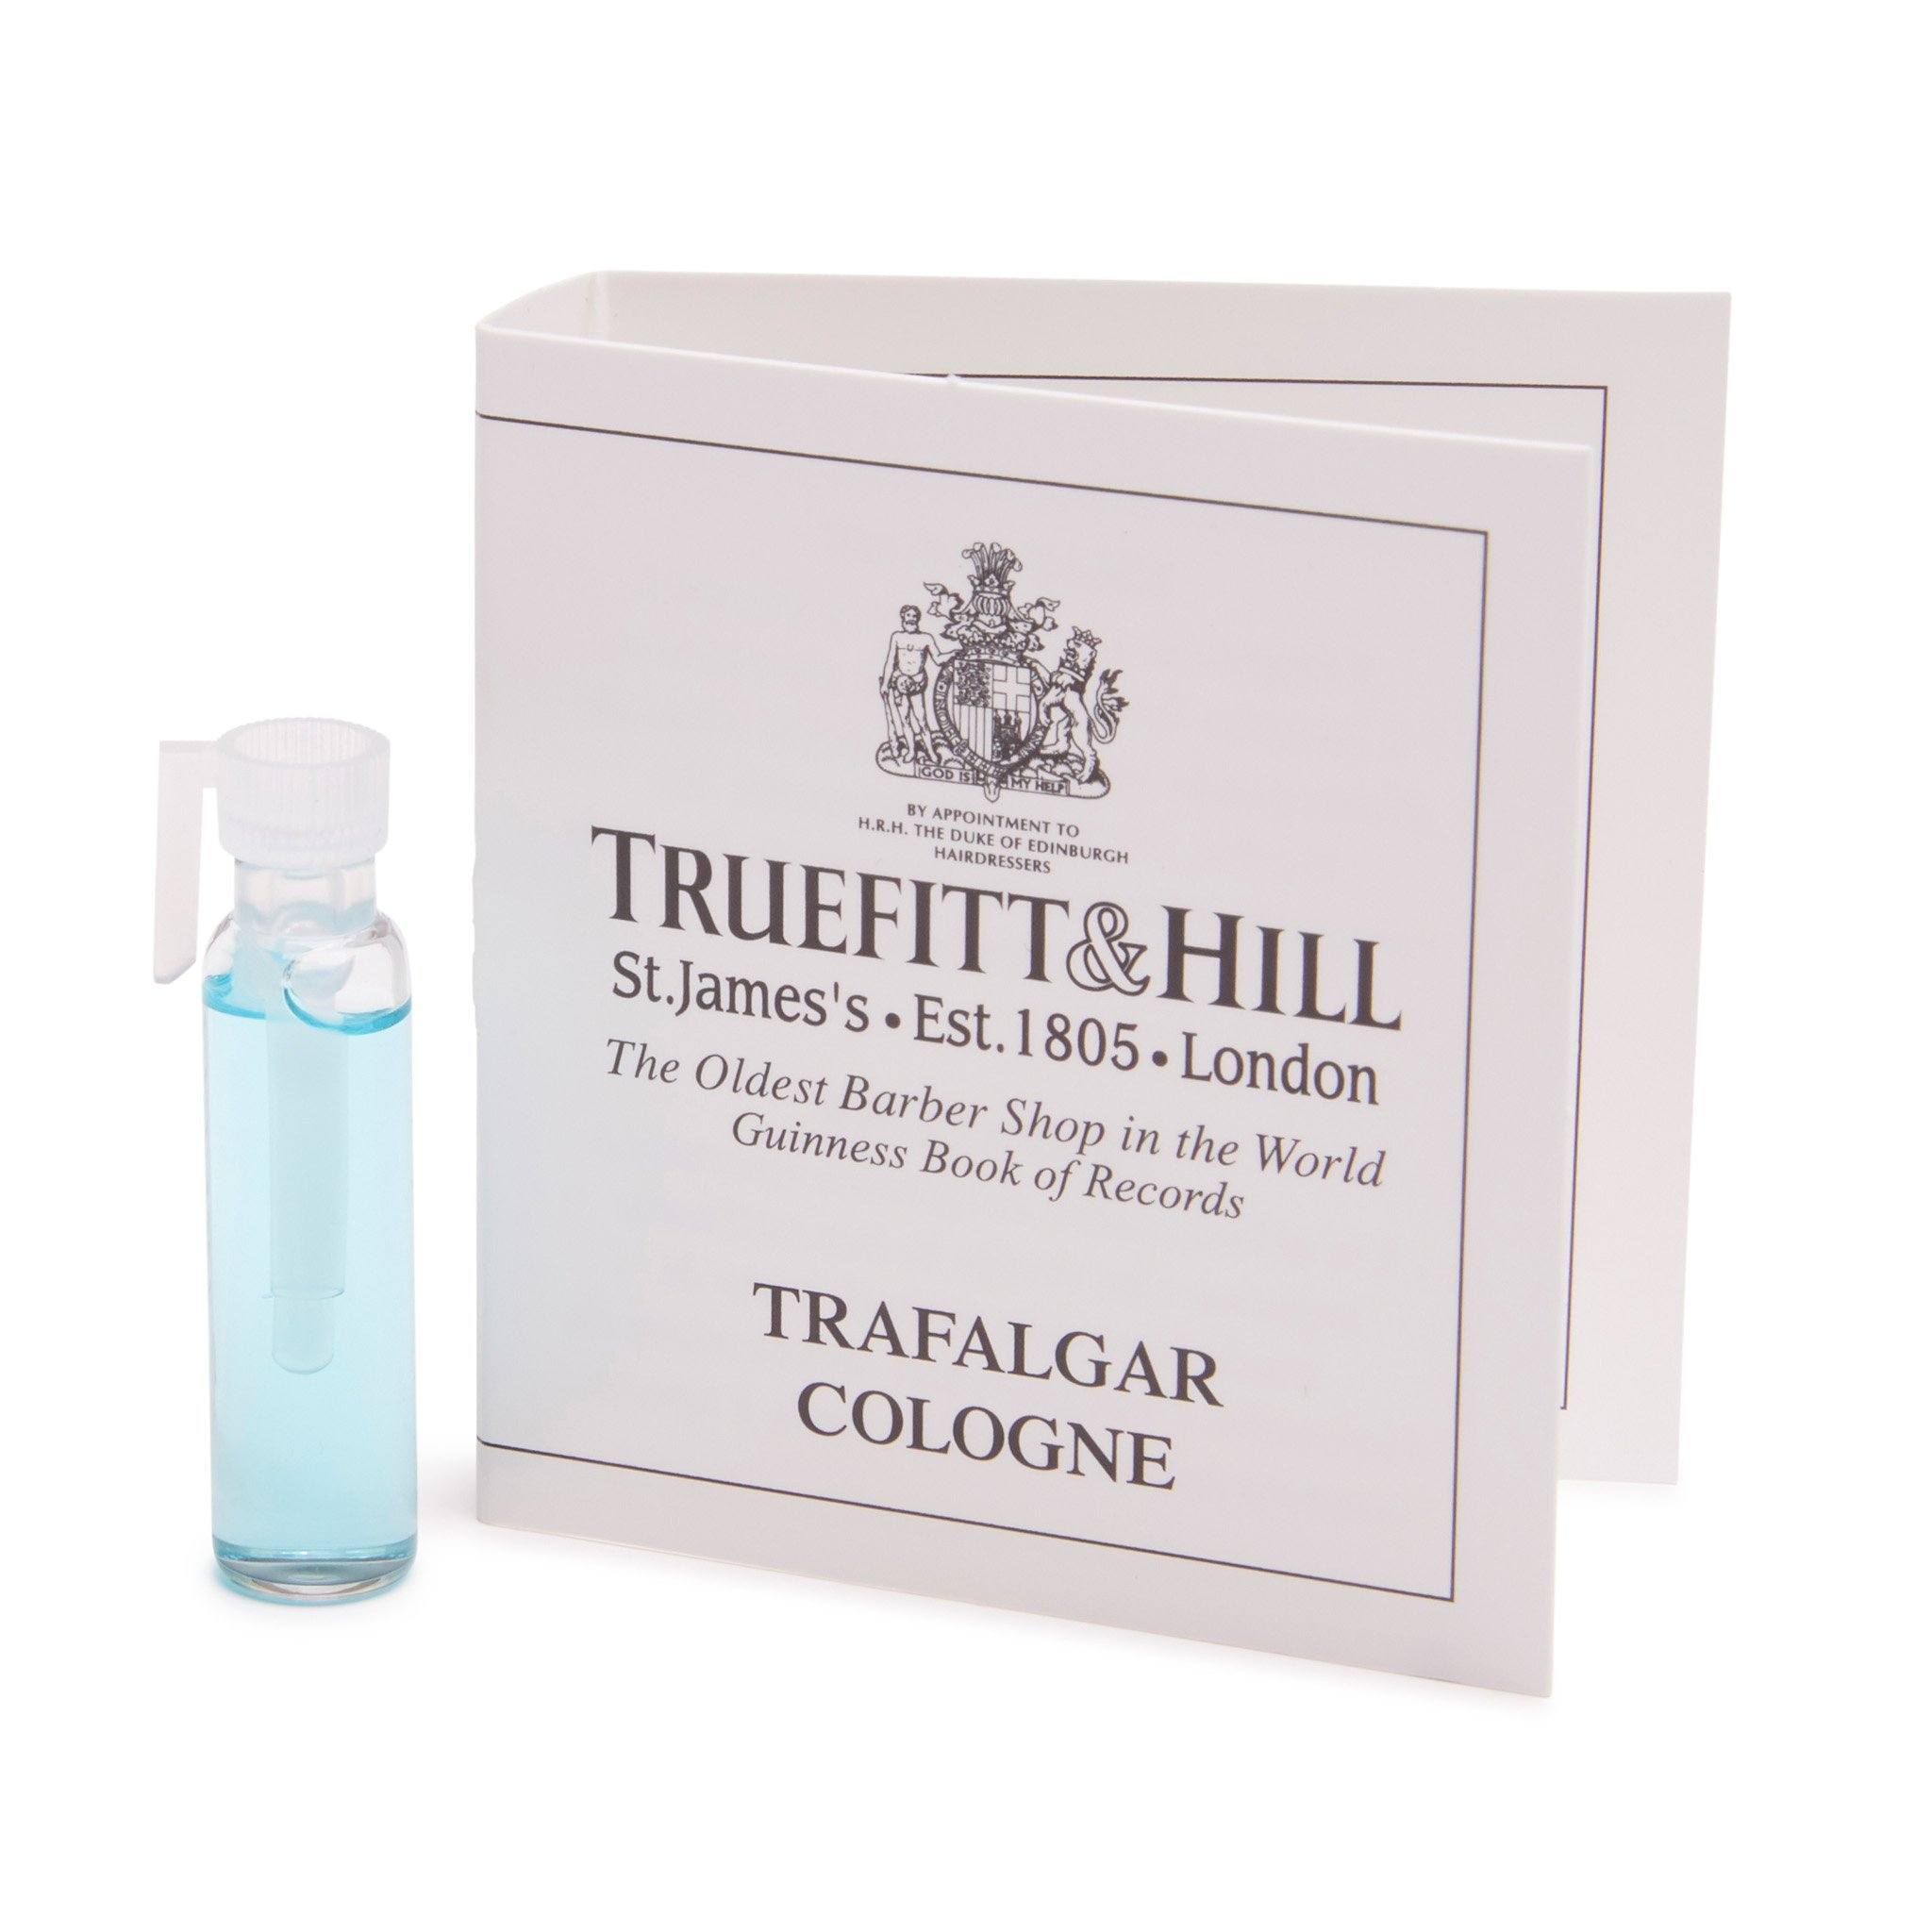 Truefitt & Hill Cologne vareprøve Trafalgar